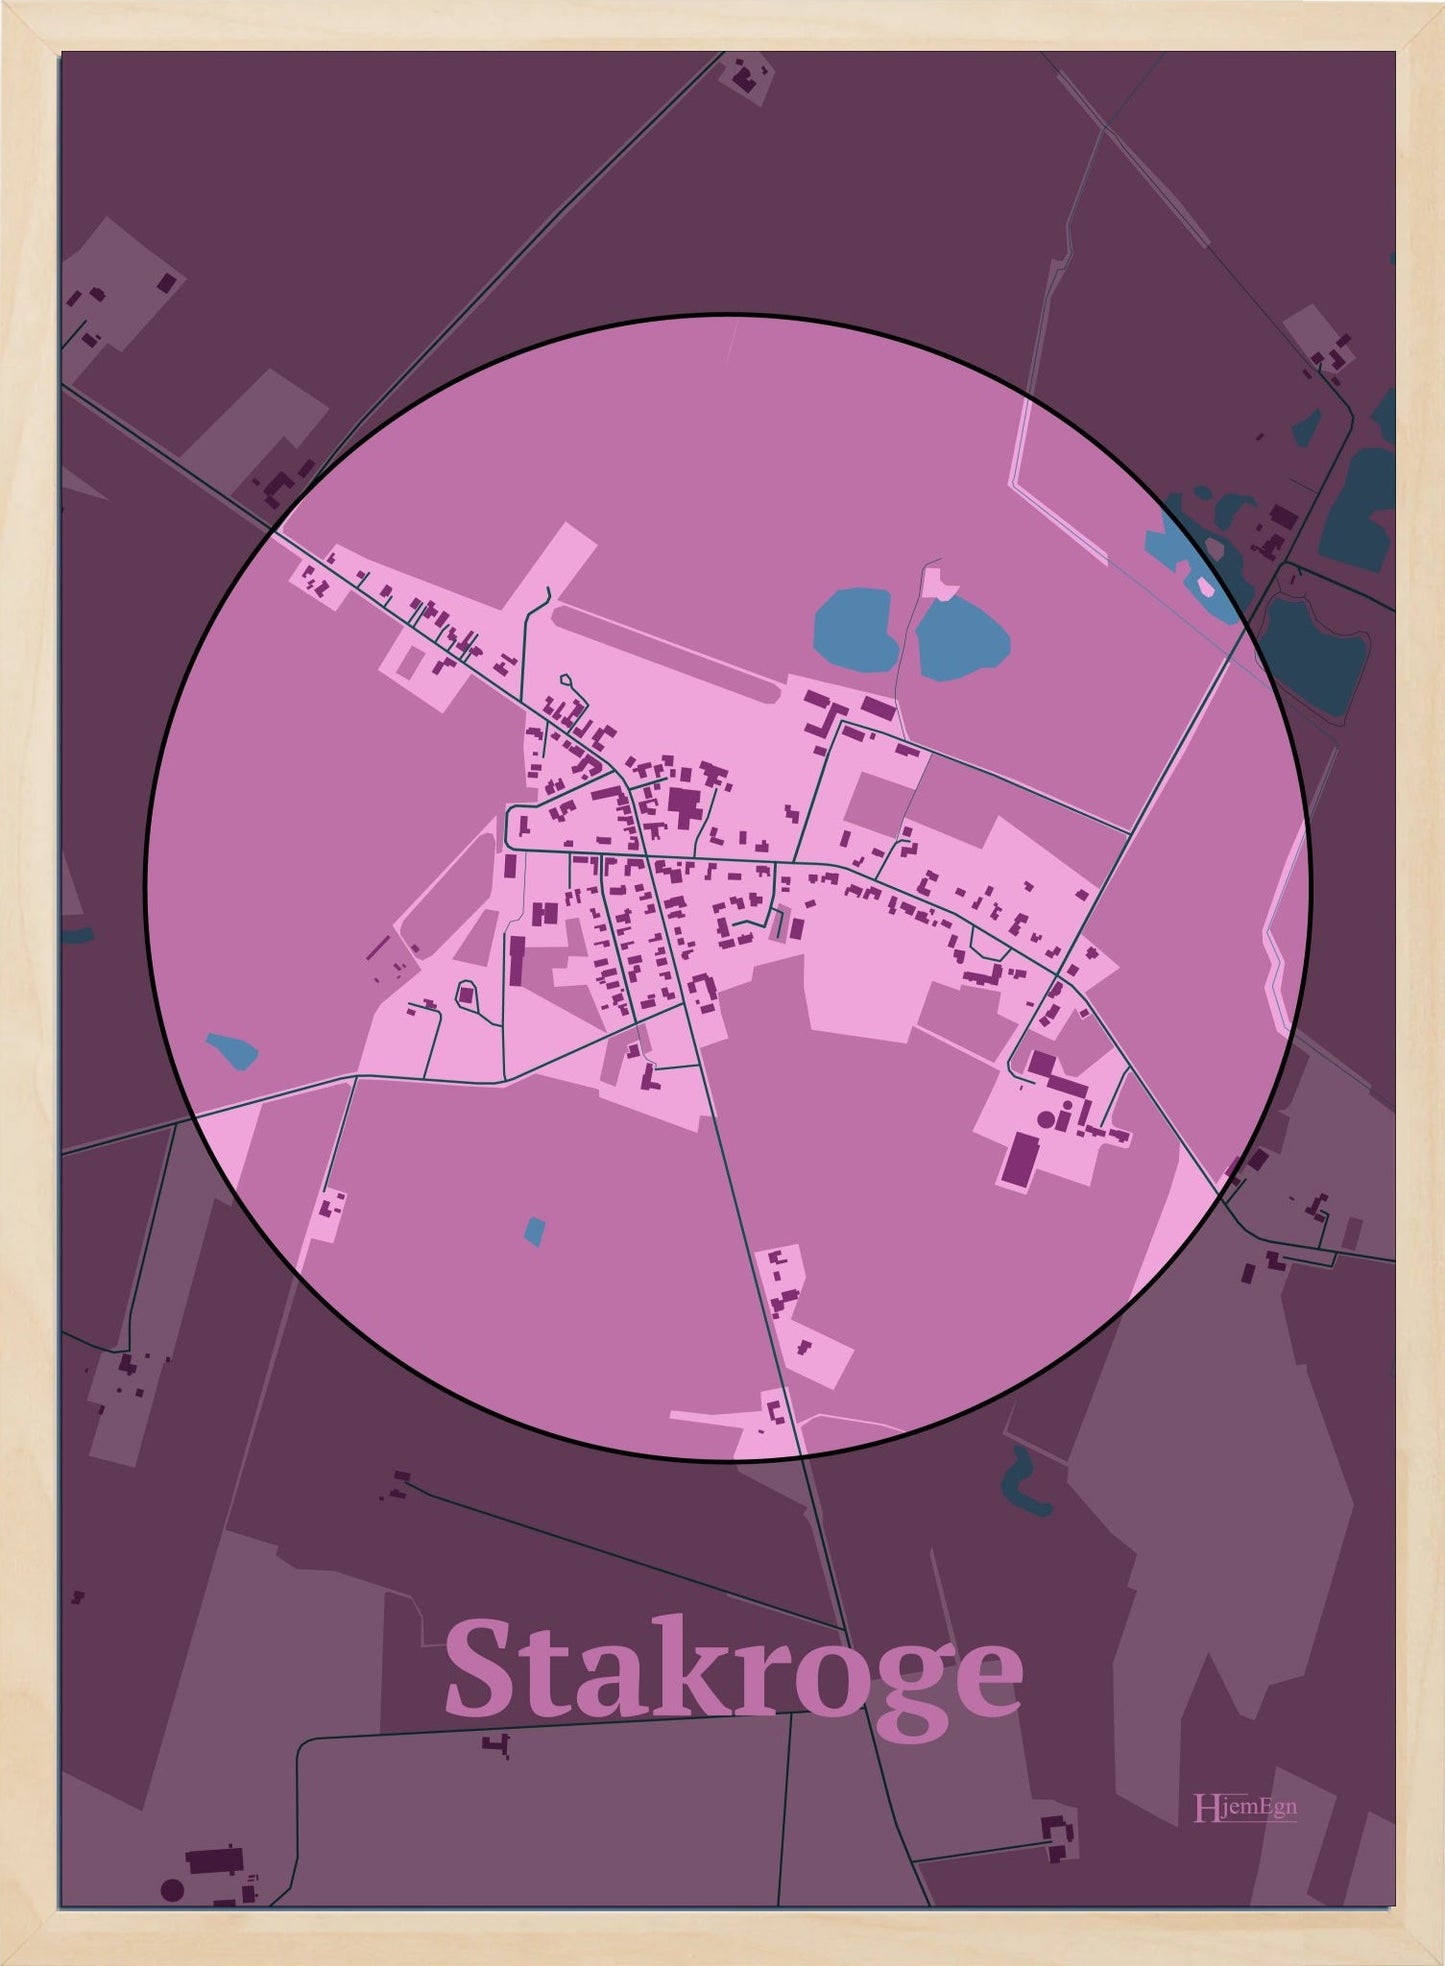 Stakroge plakat i farve pastel rød og HjemEgn.dk design centrum. Design bykort for Stakroge